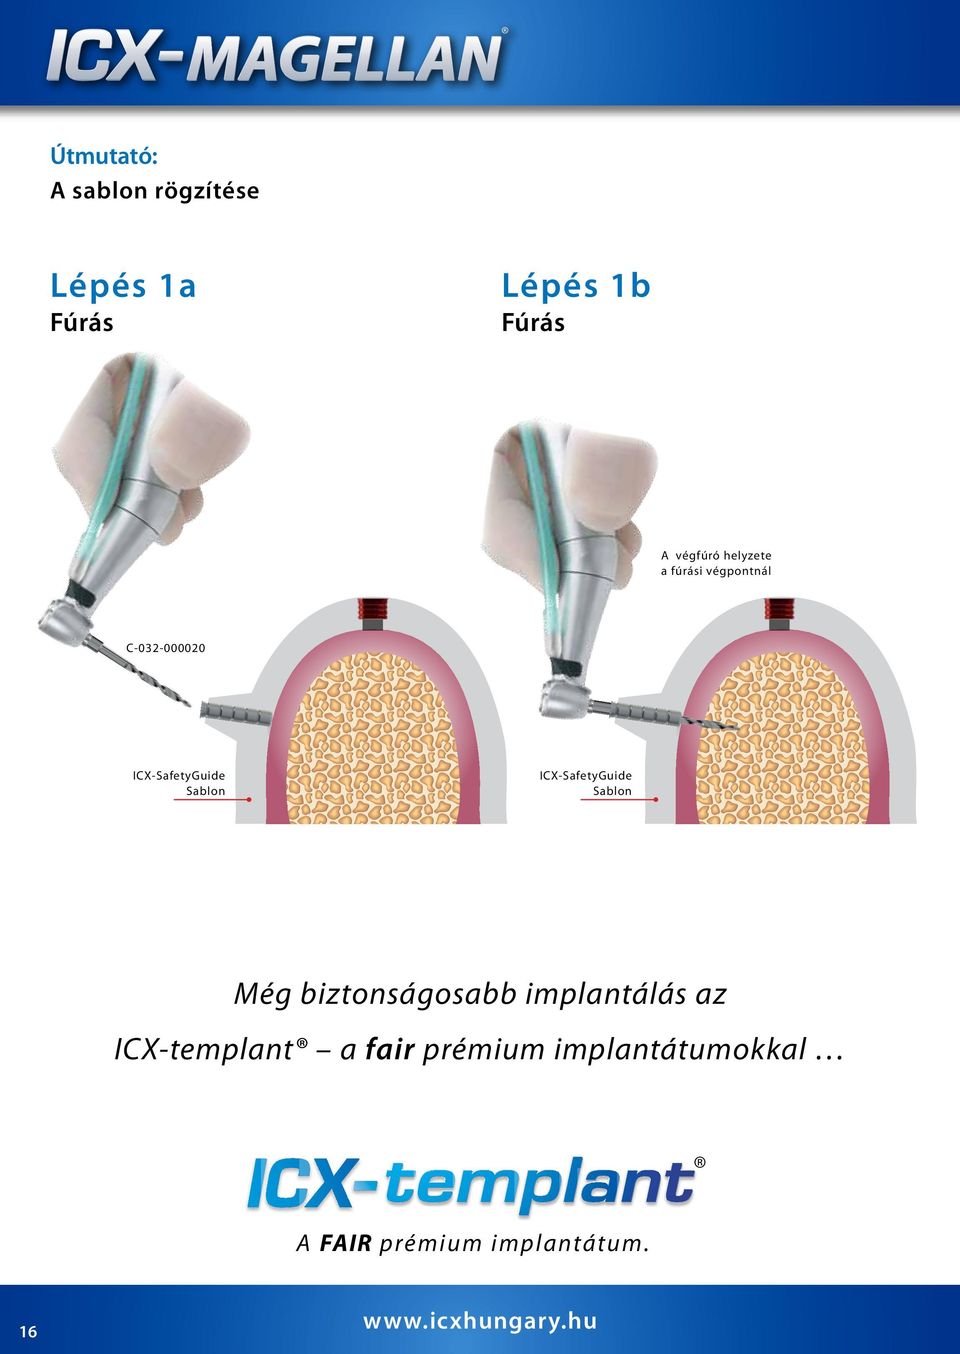 ICX-SafetyGuide Sablon Még biztonságosabb implantálás az ICX-templant a